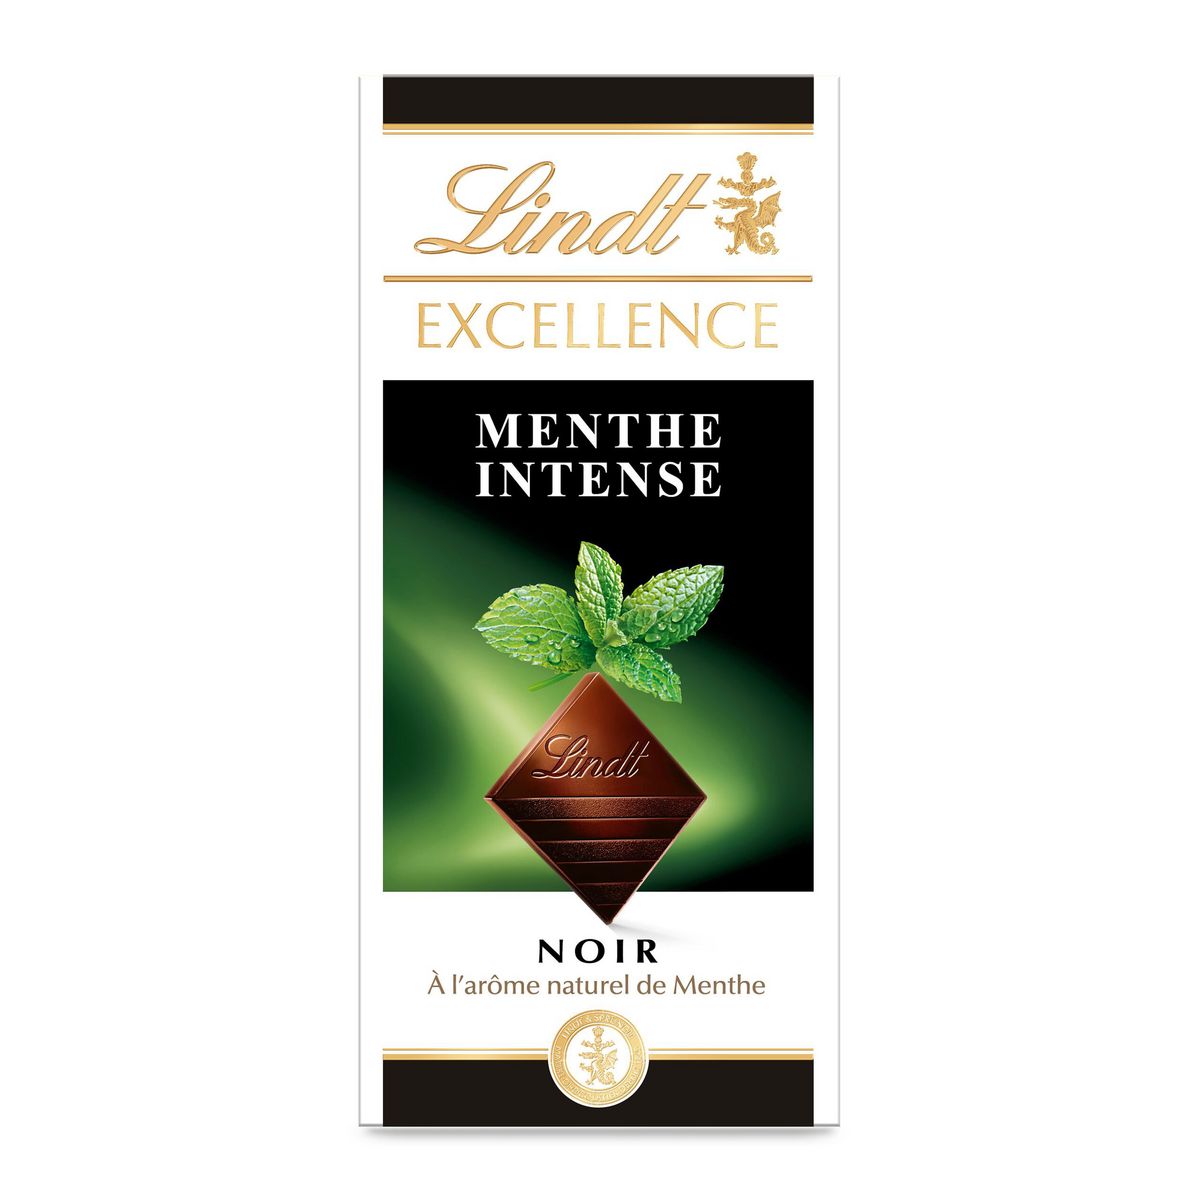 LINDT Excellence tablette de chocolat noir dégustation et menthe intense 1 pièce 100g